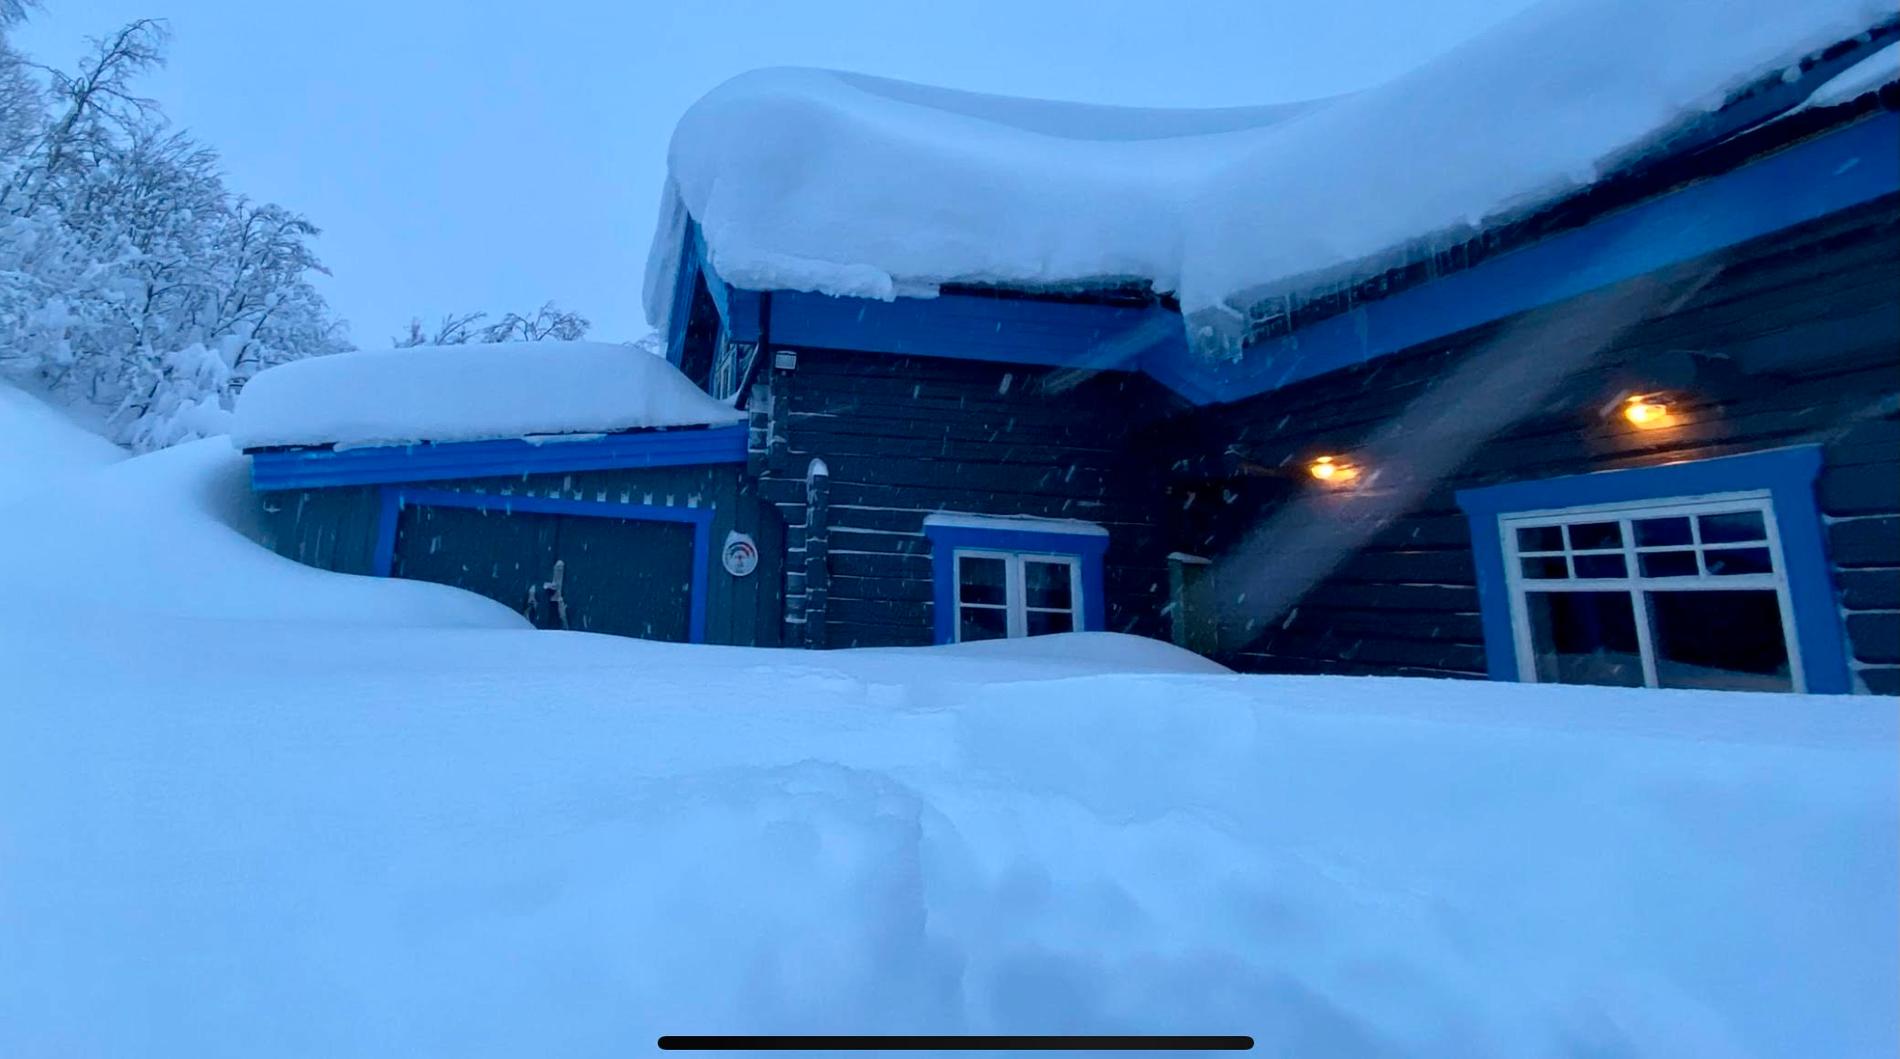  I Kittelfjäll har 147 centimeter snö uppmätts. 